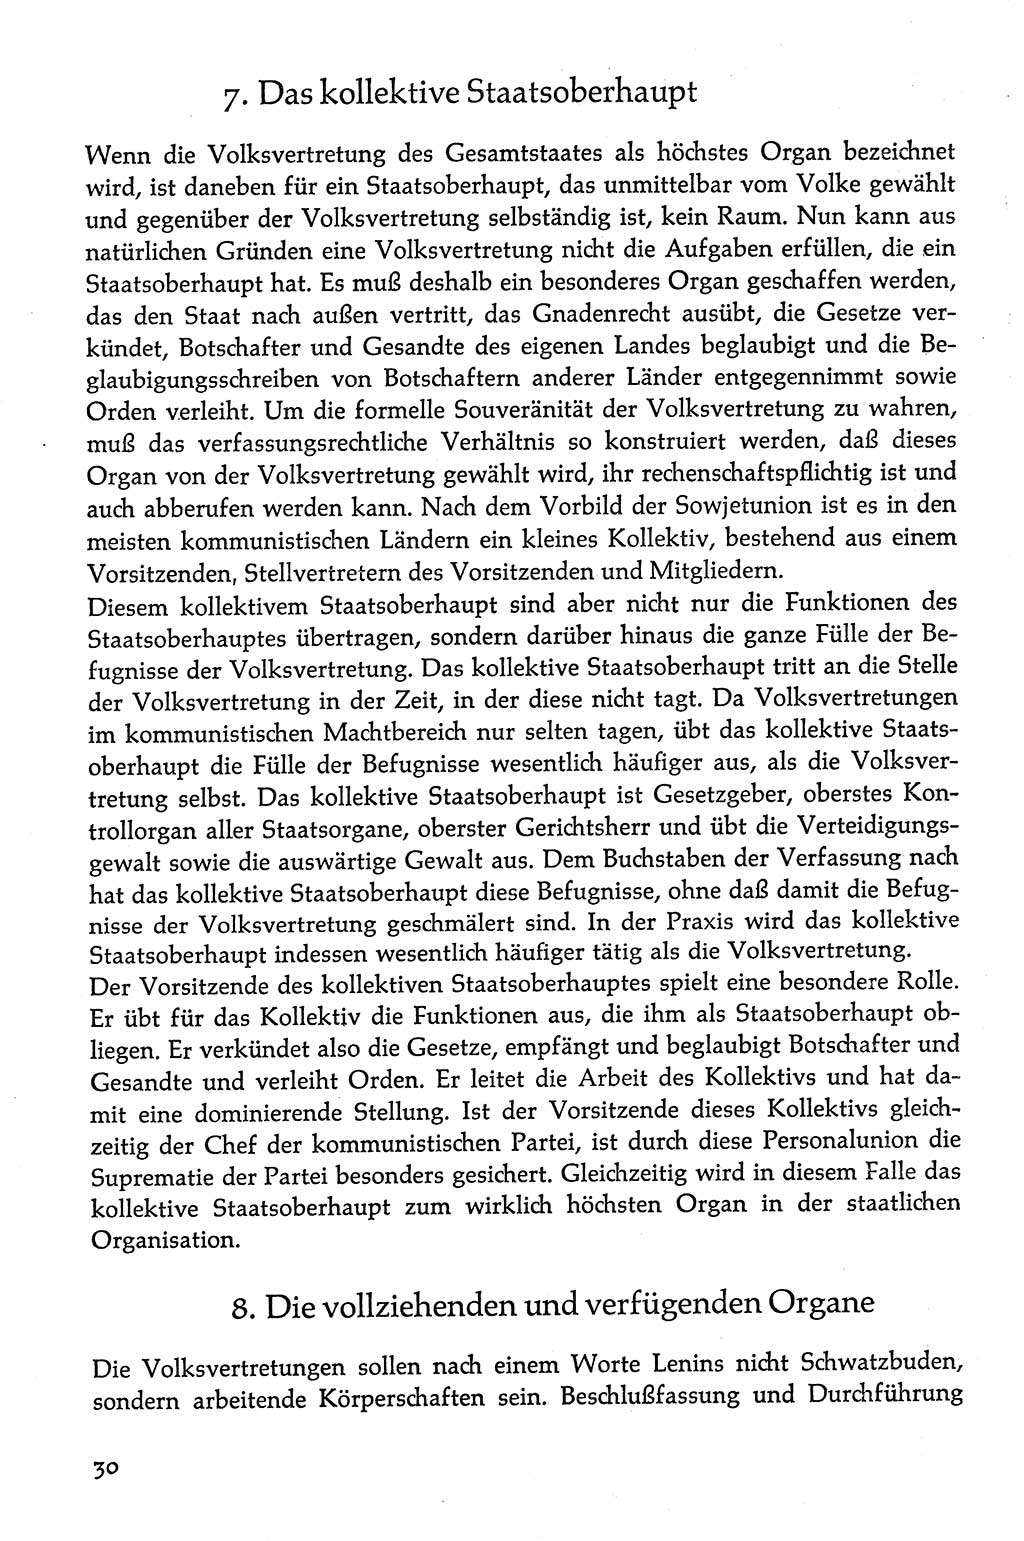 Volksdemokratische Ordnung in Mitteldeutschland [Deutsche Demokratische Republik (DDR)], Texte zur verfassungsrechtlichen Situation 1963, Seite 30 (Volksdem. Ordn. Md. DDR 1963, S. 30)